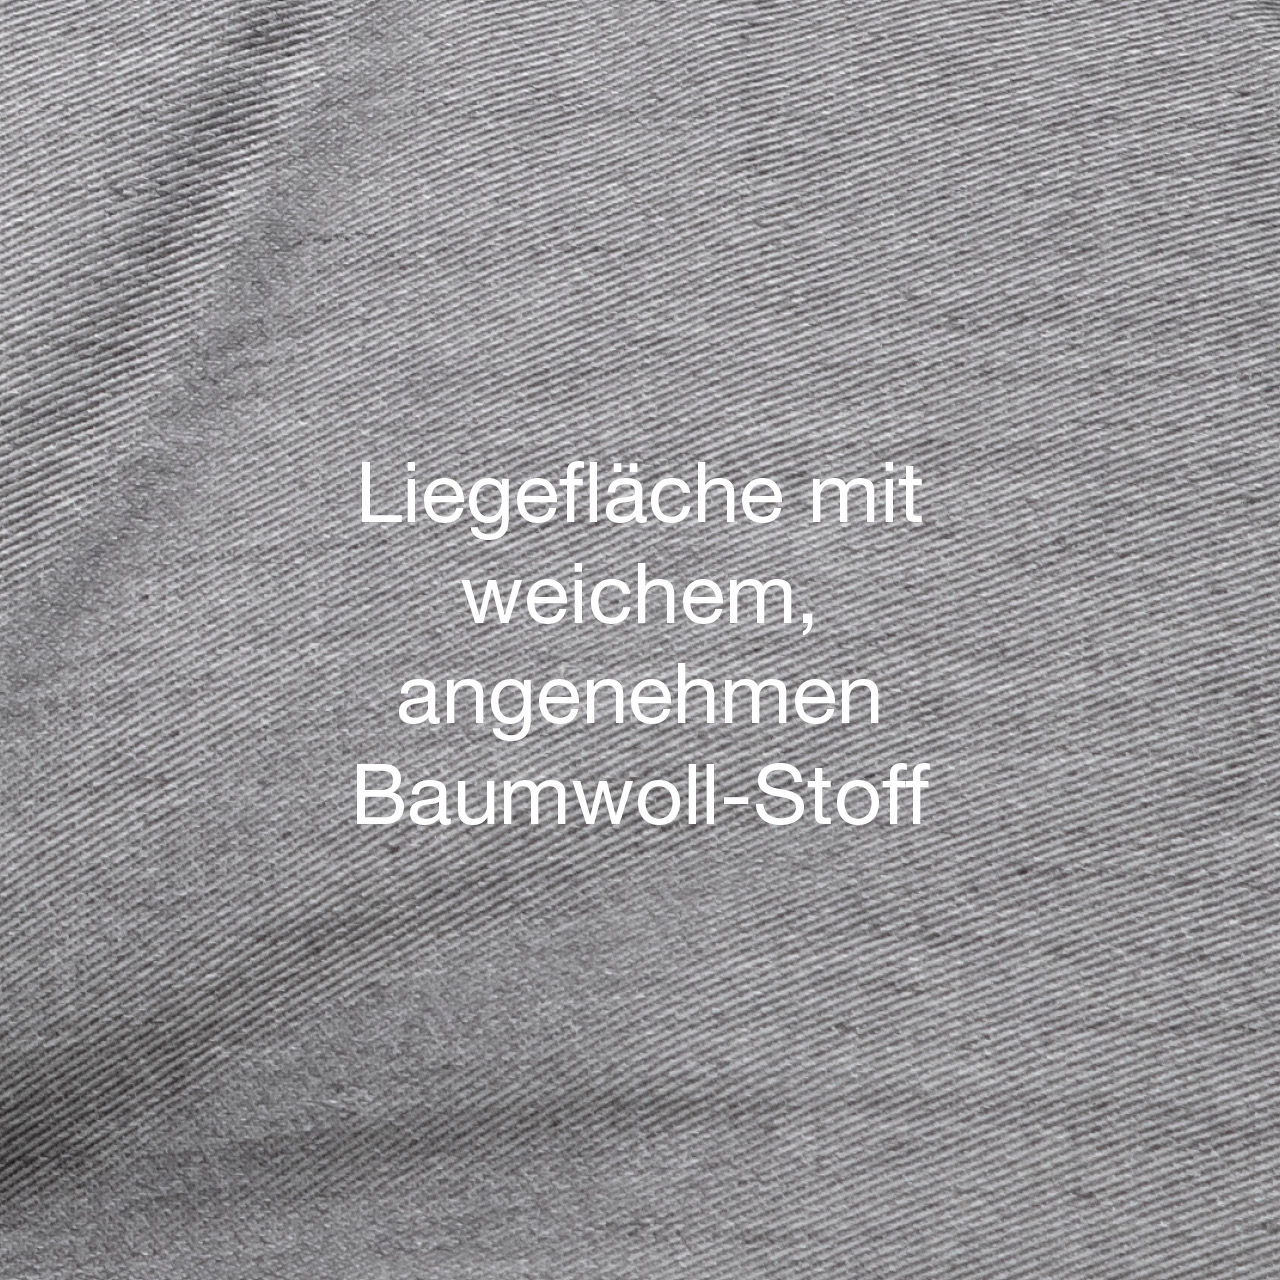 Öko-Hundebett St. Moritz hellgrau mit weicher Liegefläche aus angenehmen. robusten Baumwollstoff